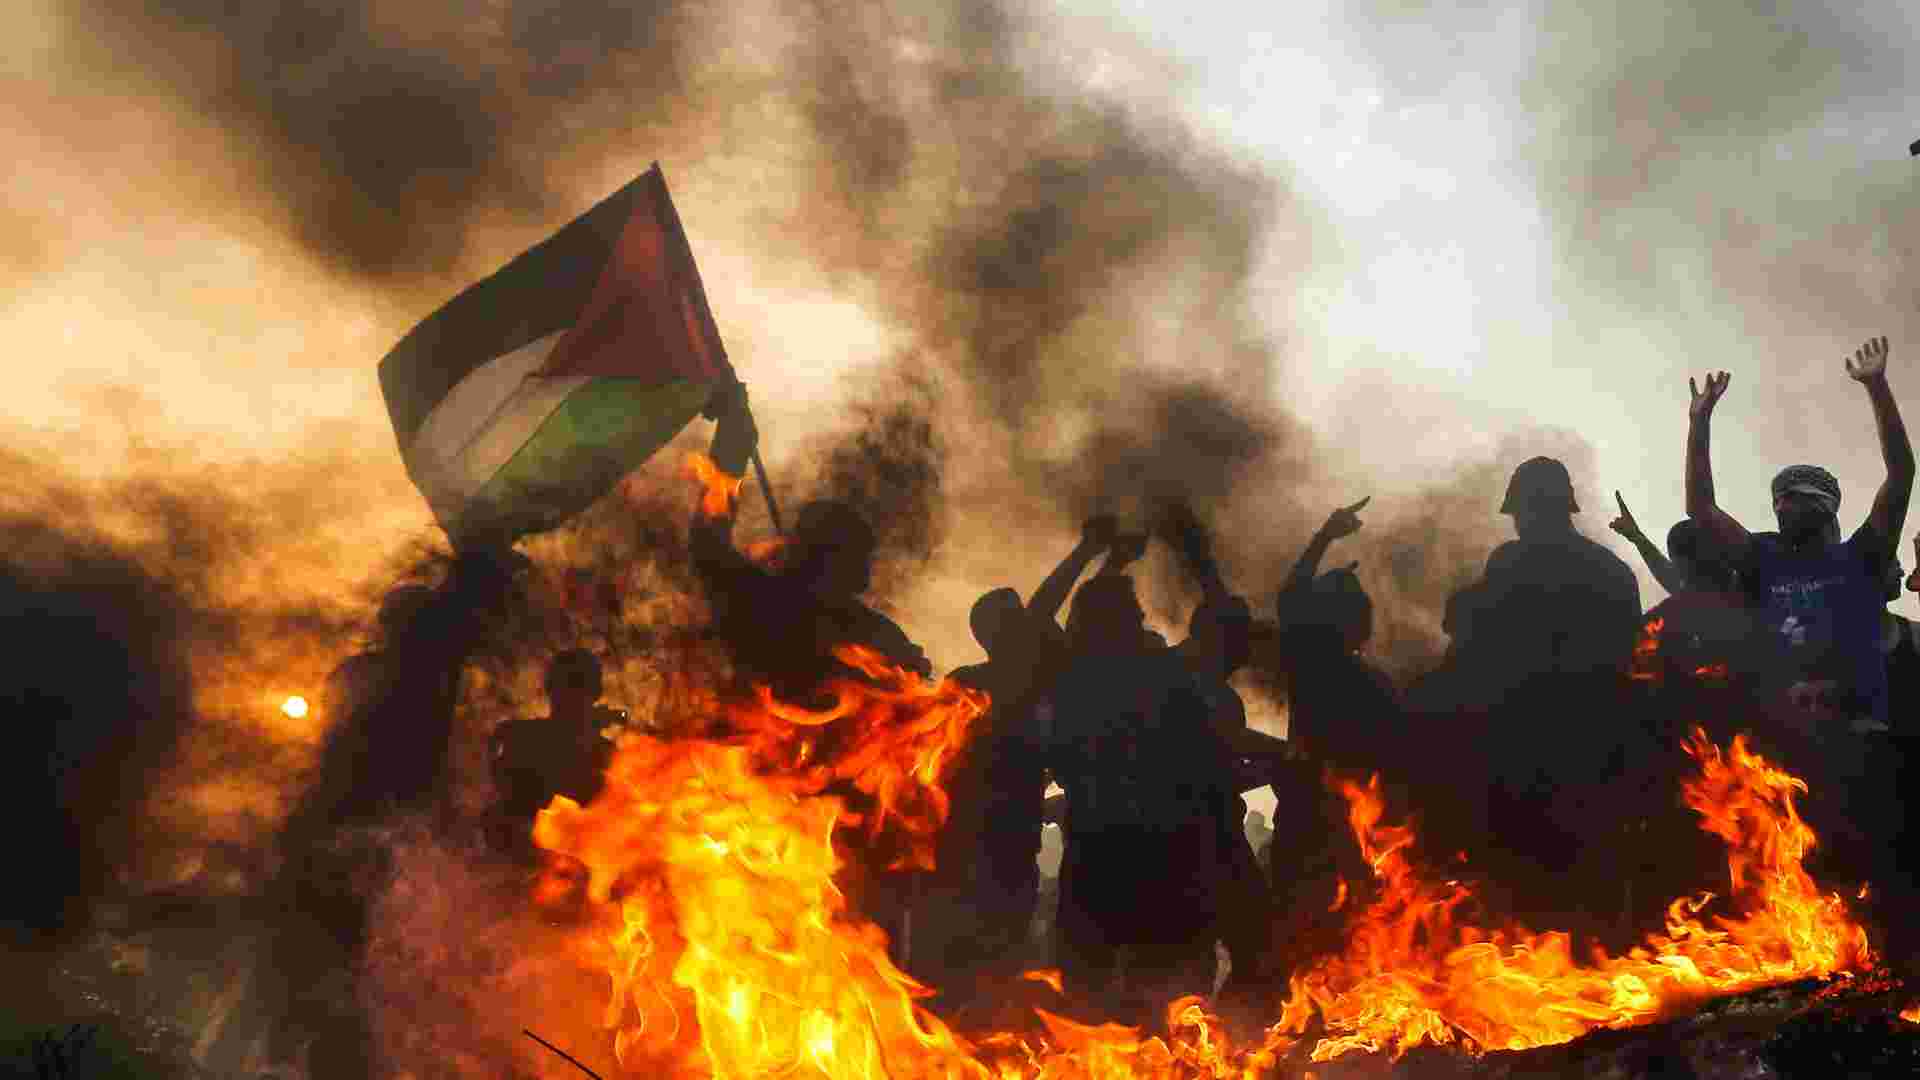 ŠOKANTAN OBRAT: Bivši šef Vijeća za nacionalnu sigurnost Izraela -“Hamas nije uništen, ponovo su se vratili i drže…”